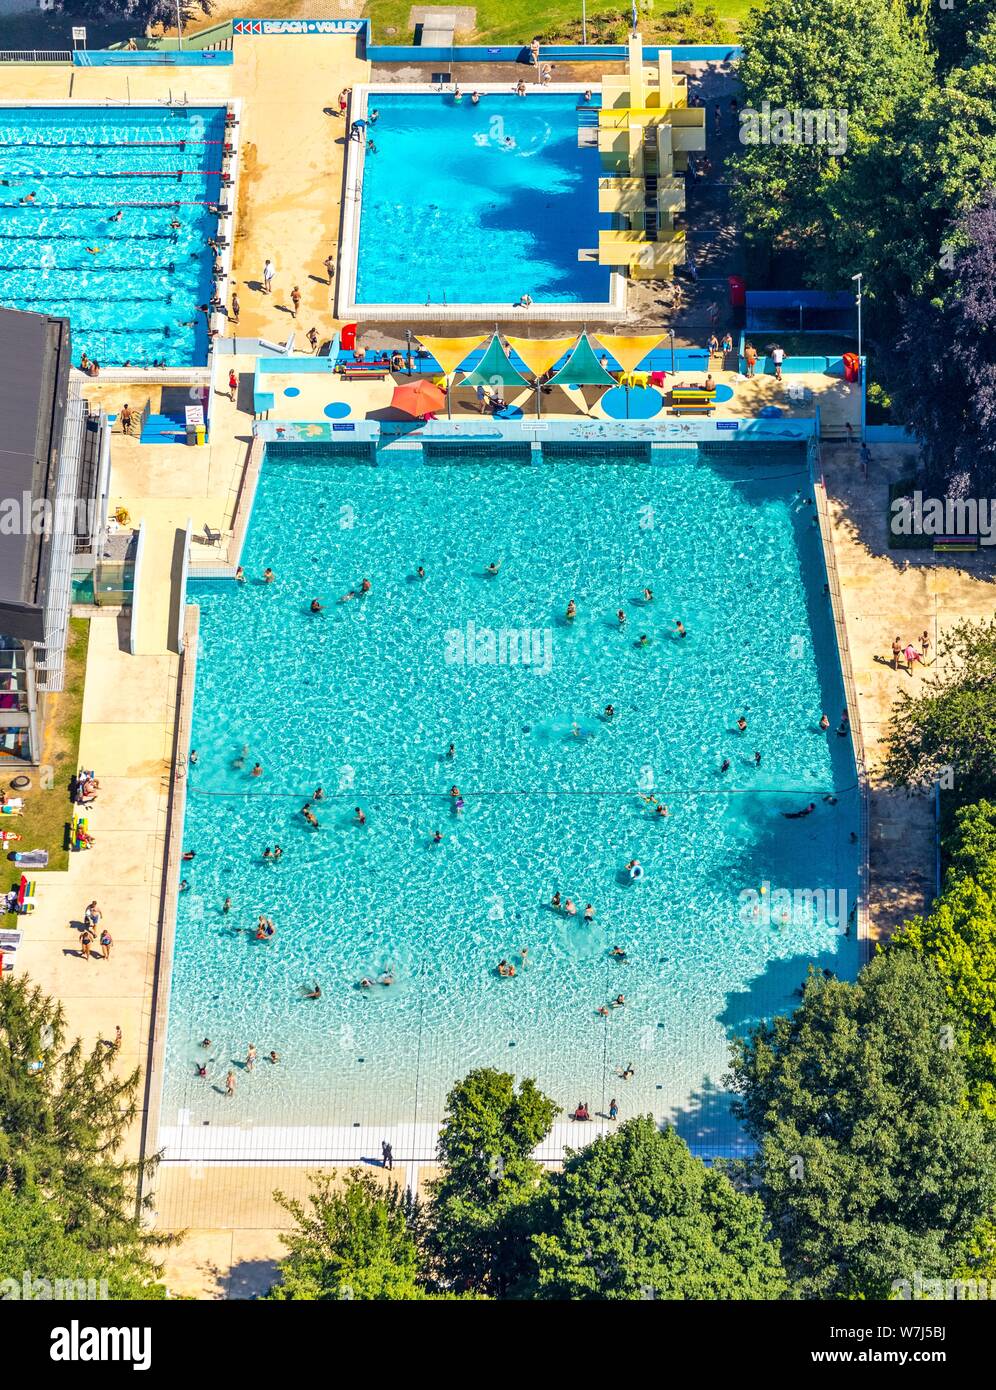 Luftaufnahme, öffentliches Schwimmbad, Panorama Pool Velbert-Neviges mit  Sprungturm und Tauchbecken, Velbert, Nordrhein-Westfalen, Deutschland  Stockfotografie - Alamy